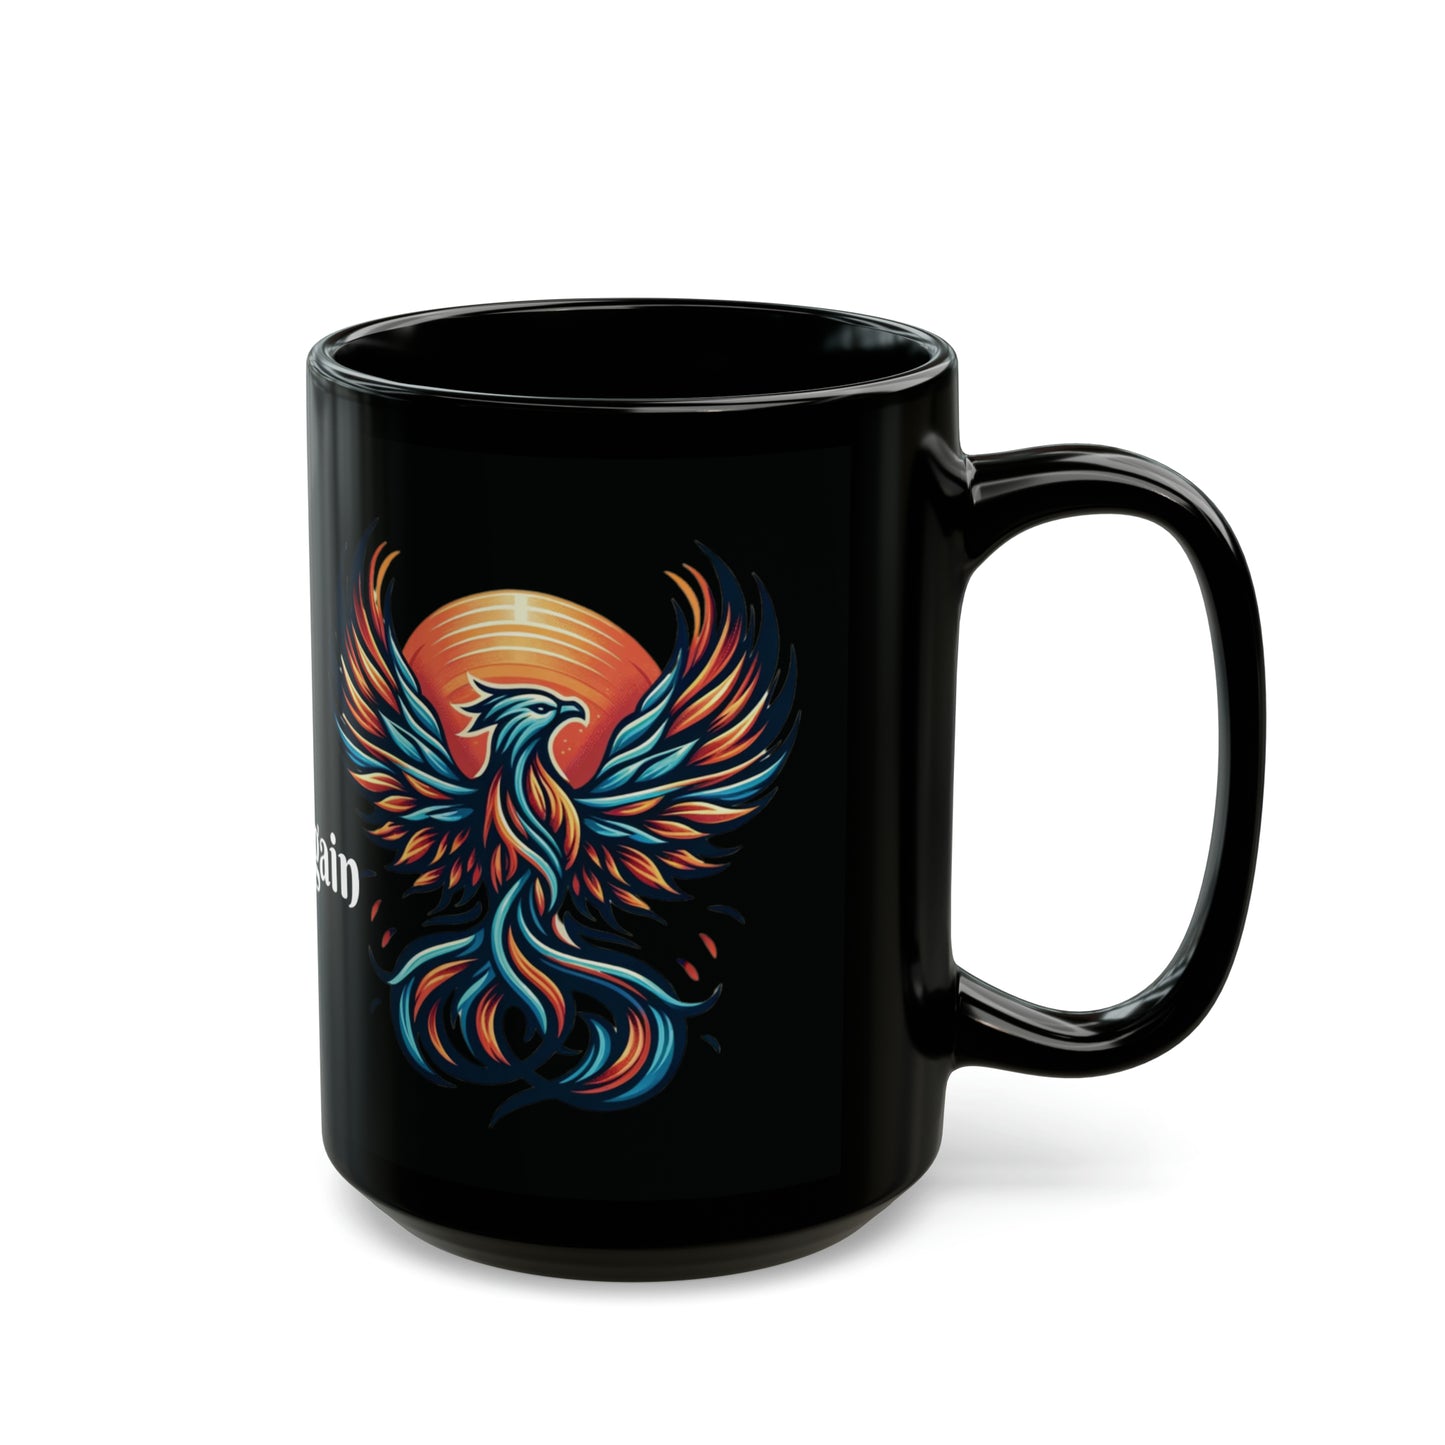 Phoenix Dawn Coffee Mug: "Rise Again" with Every Sip | Black Ceramic Mug (11oz, 15oz)